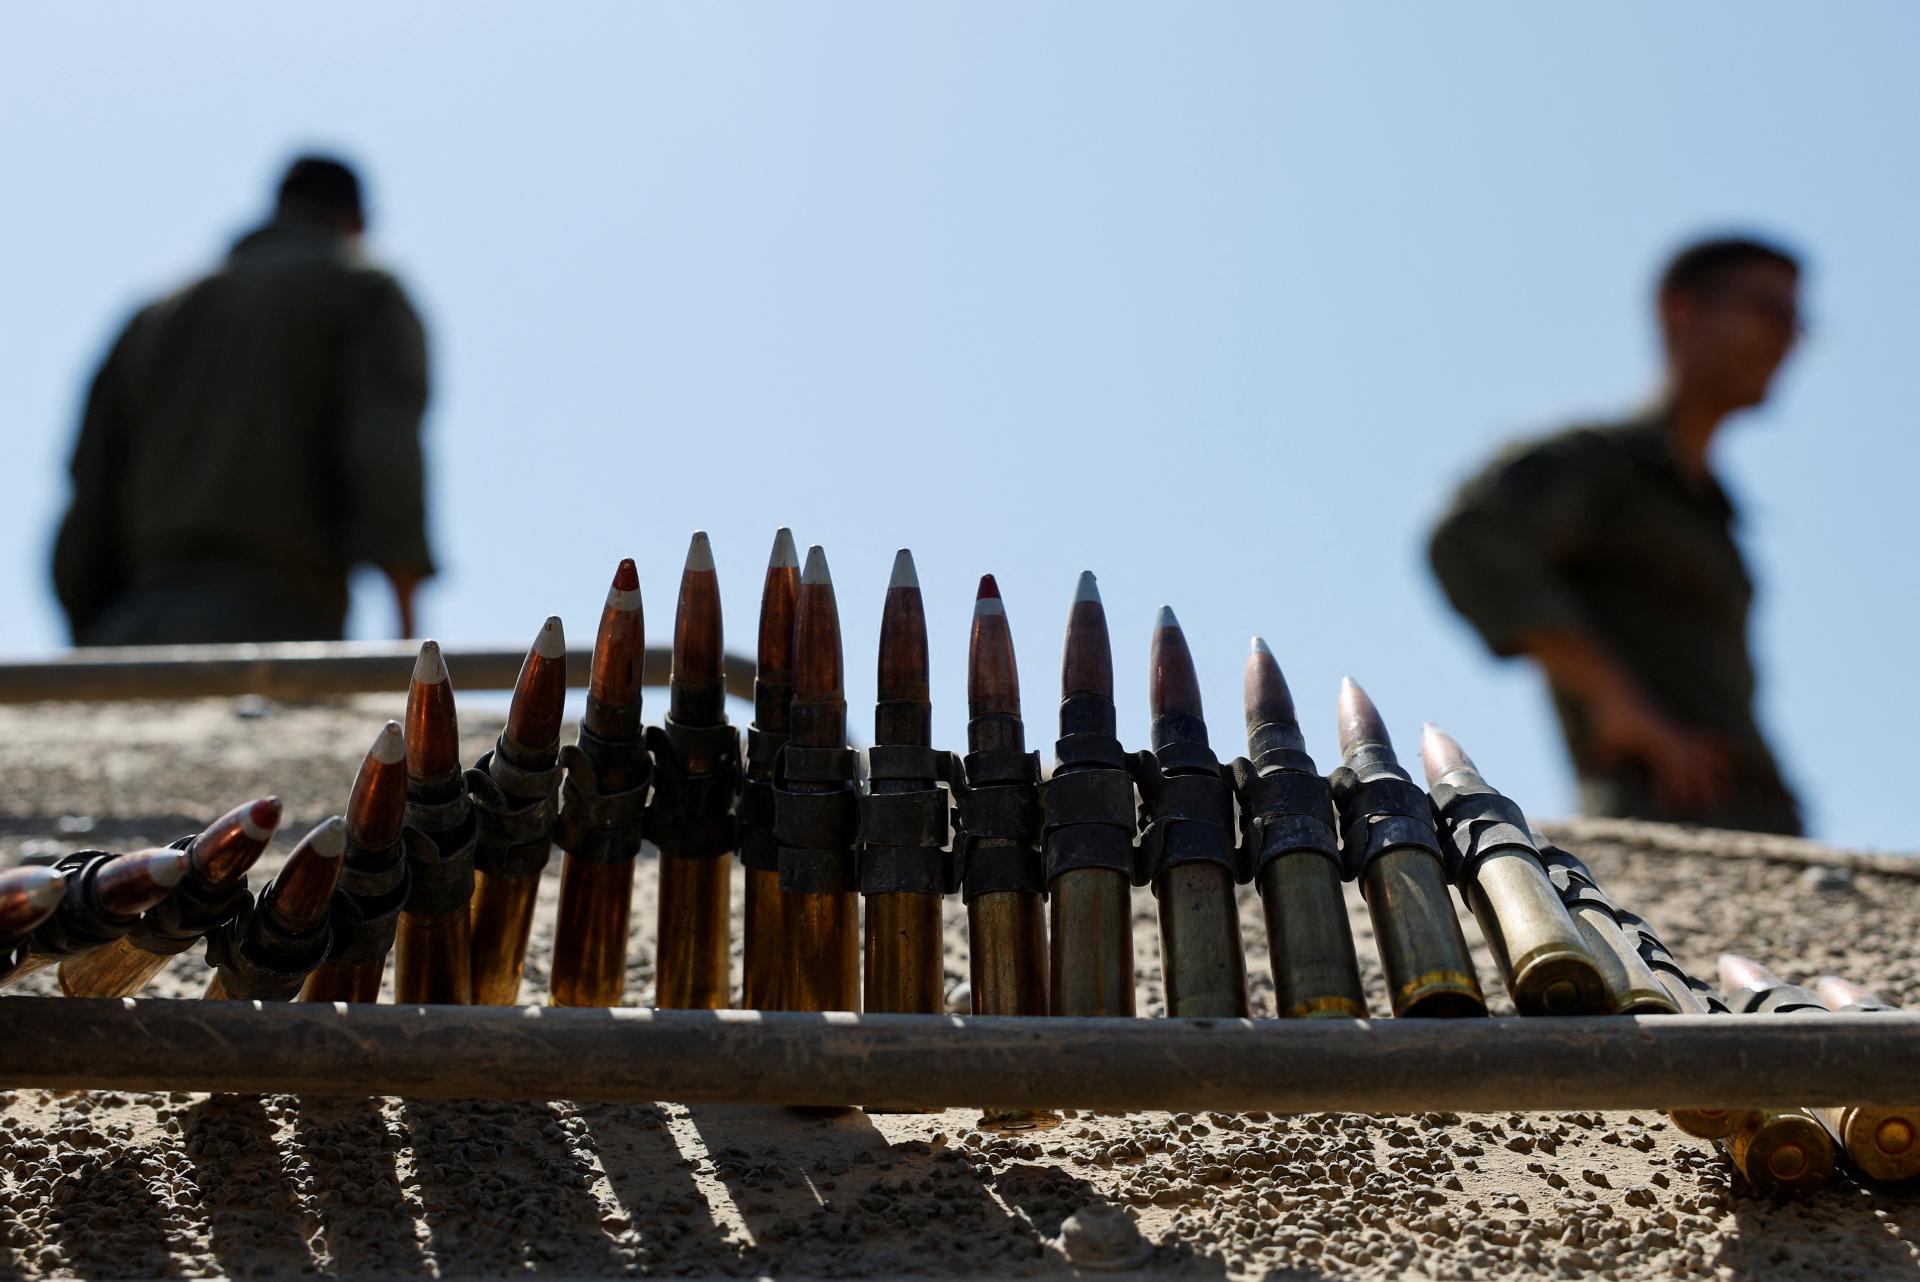 Západ pošle Ukrajine 152-milimetrové delostrelecké náboje za 350 miliónov eur, oznámilo Holandsko